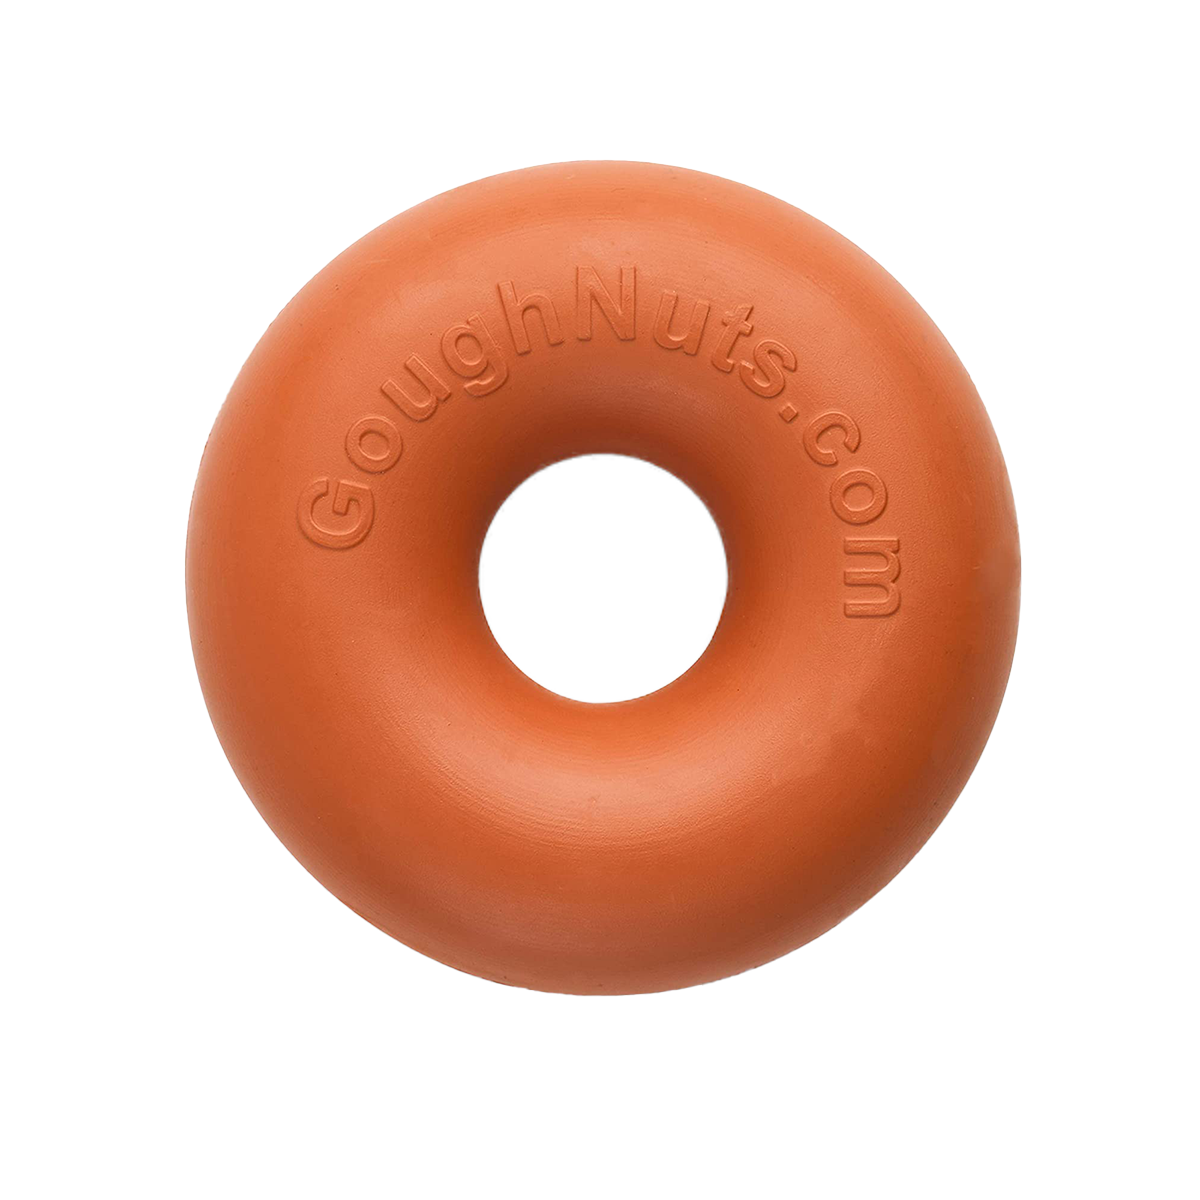 Goughnuts Ring Original